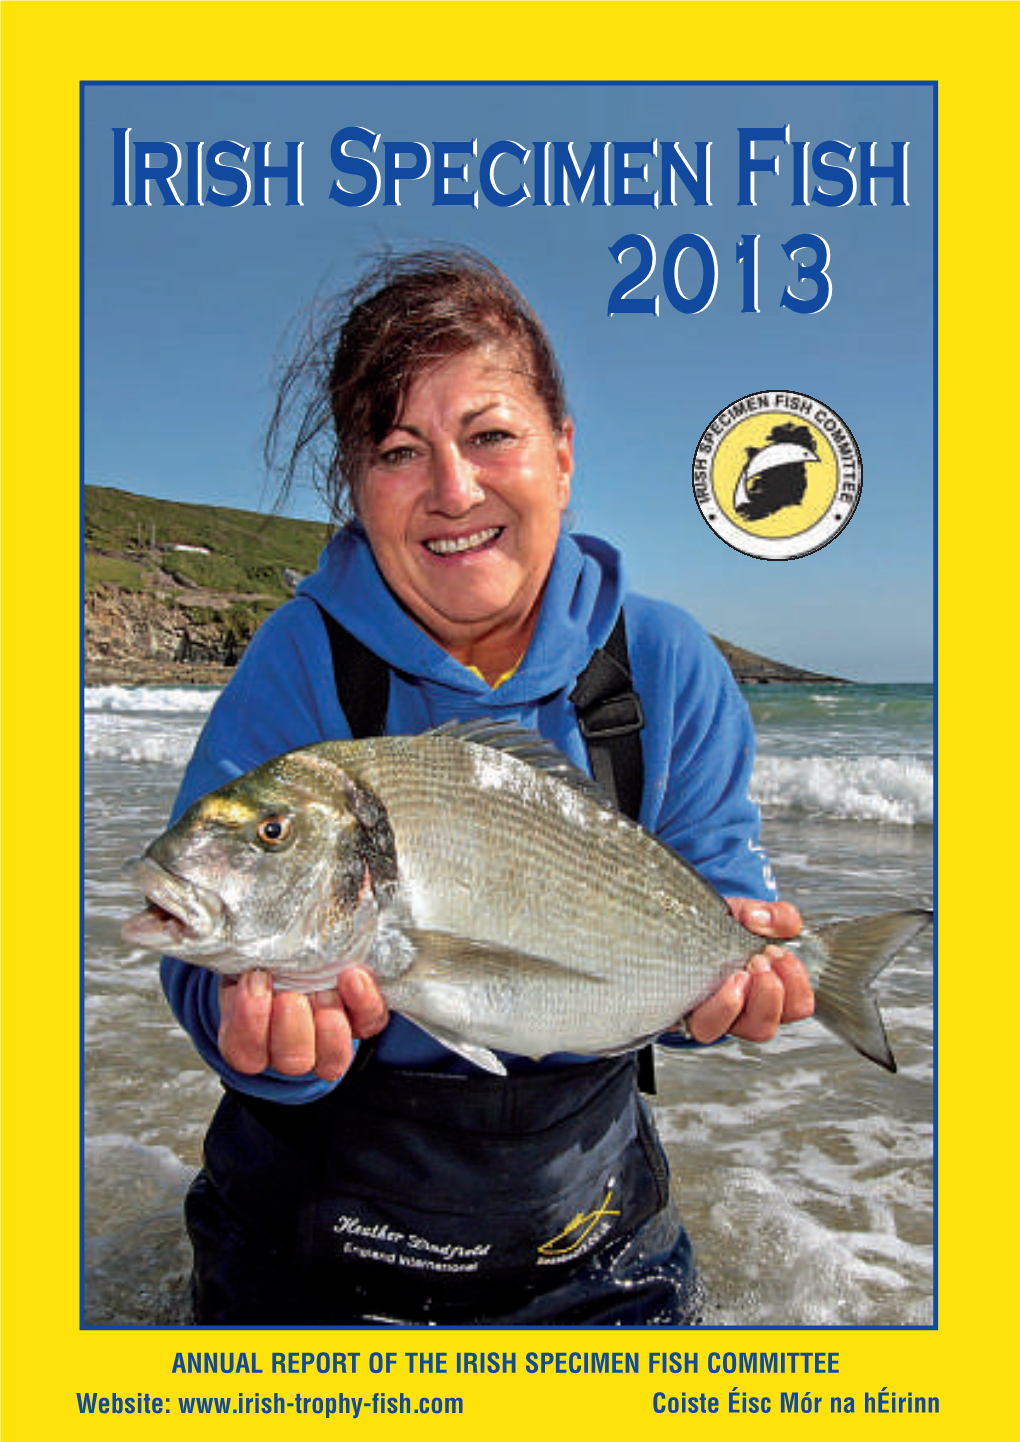 Irish Specimen Fish 2013 TF 30/01/2014 12:31 Page 1